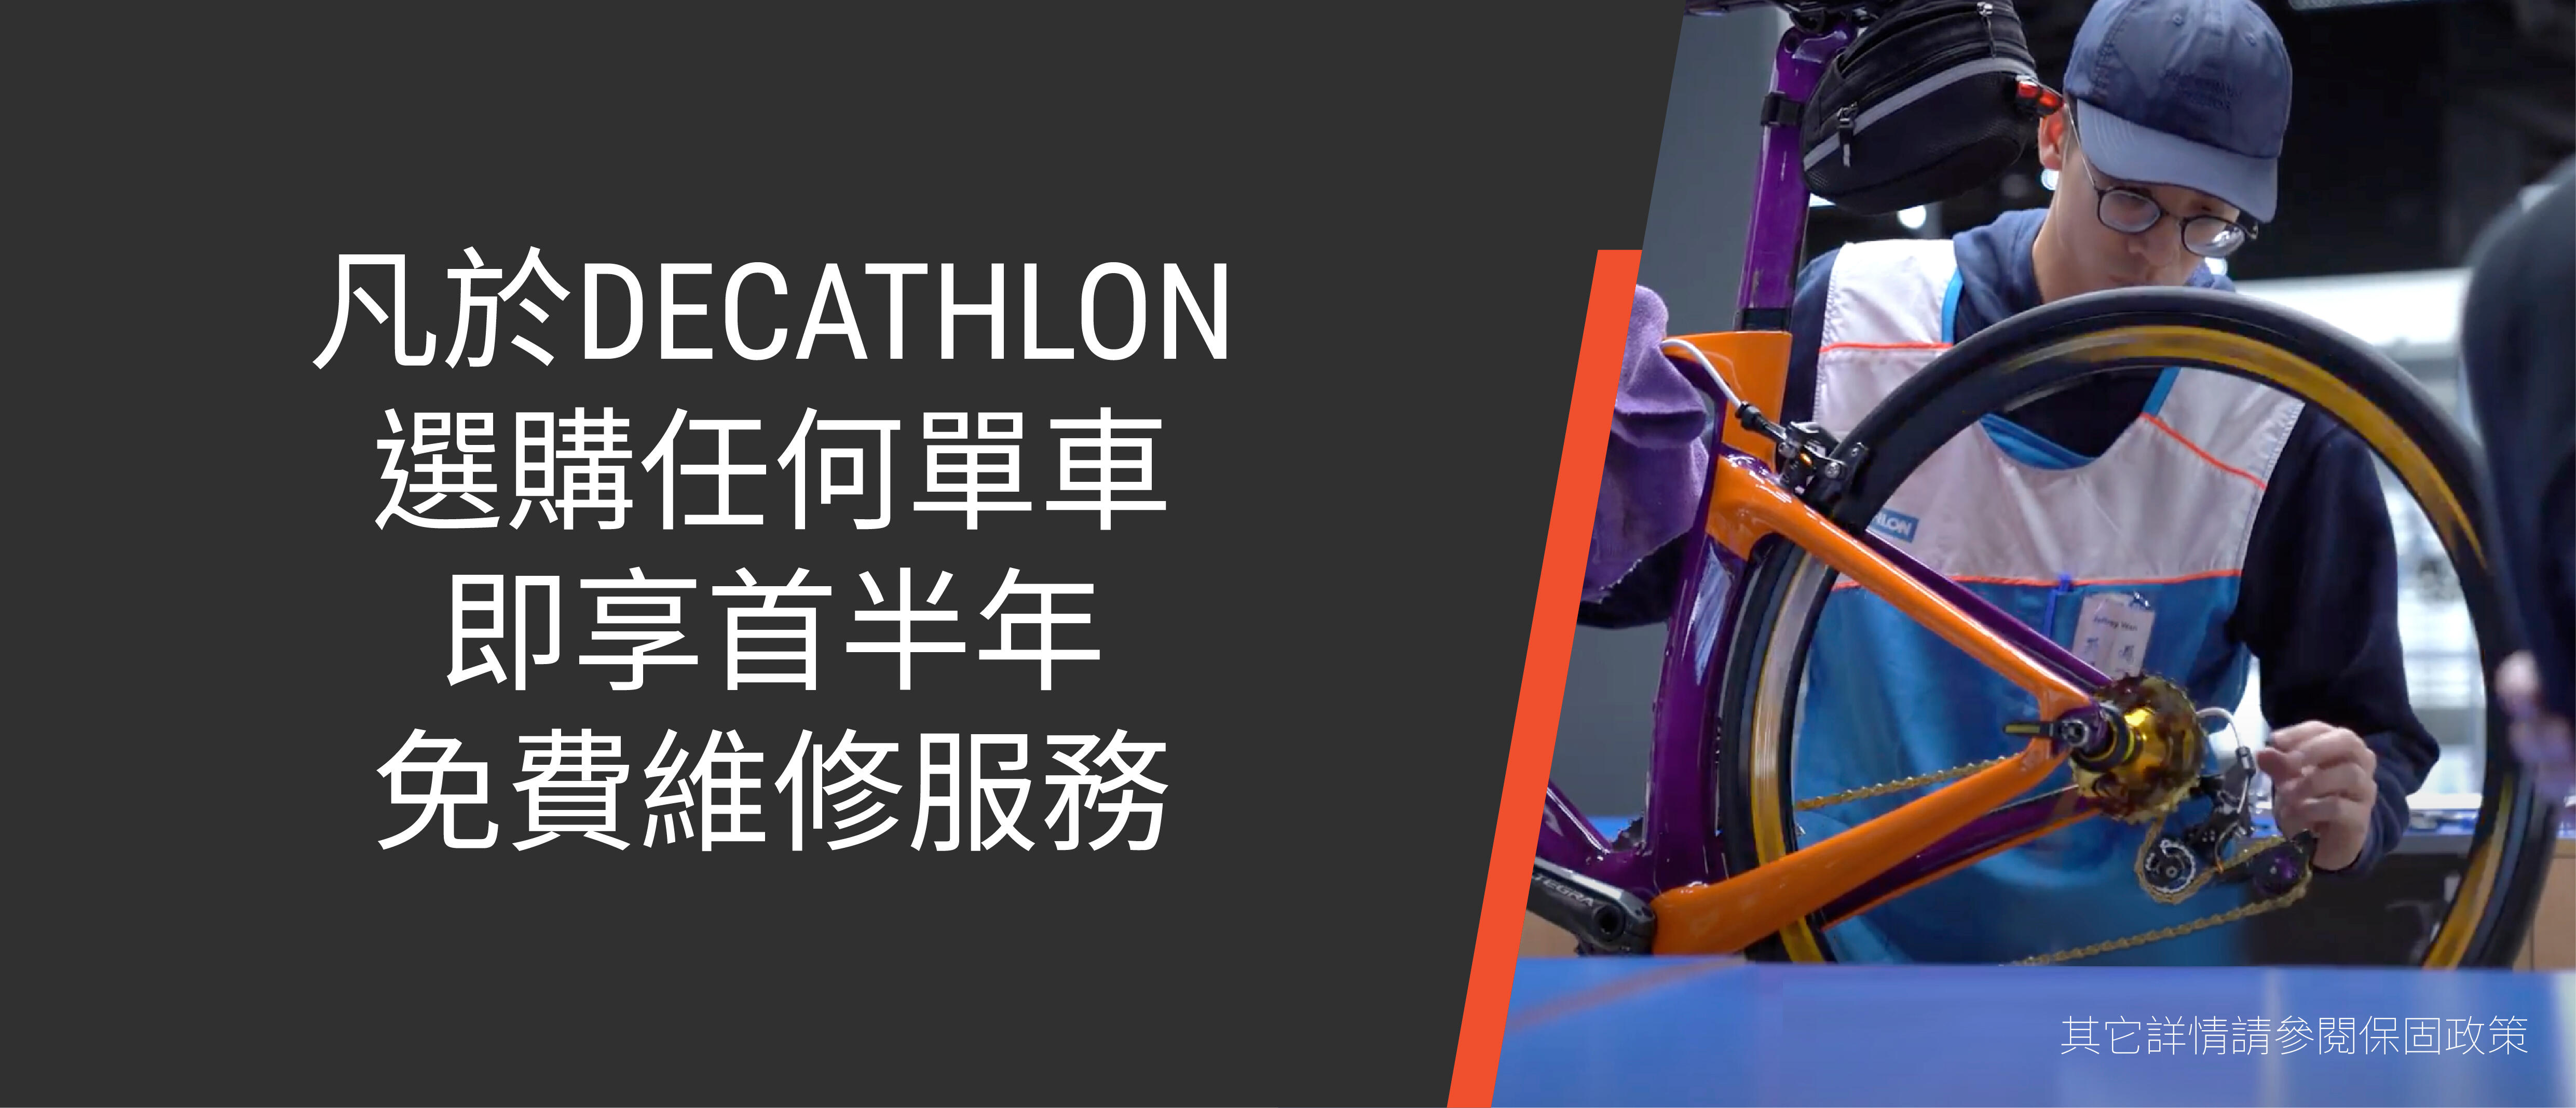 DECATHLON 單車維修工作室 - 凡於DECATHLON選購任何單車，即享首半年免費維修服務